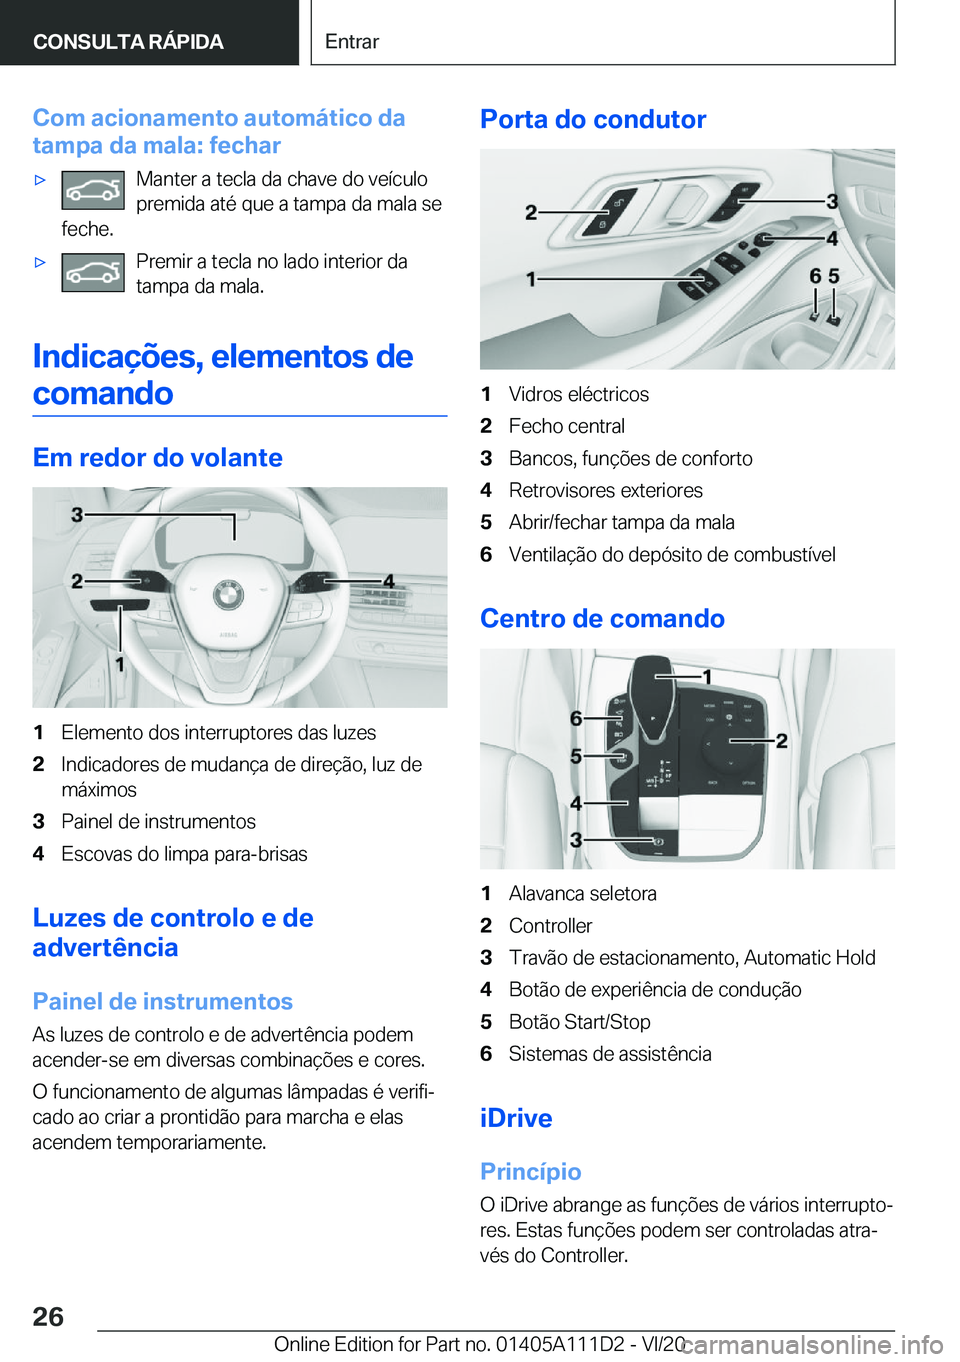 BMW 3 SERIES SEDAN PLUG-IN HYBRID 2021  Manual do condutor (in Portuguese) �C�o�m��a�c�i�o�n�a�m�e�n�t�o��a�u�t�o�m�á�t�i�c�o��d�a
�t�a�m�p�a��d�a��m�a�l�a�:��f�e�c�h�a�r'x�M�a�n�t�e�r��a��t�e�c�l�a��d�a��c�h�a�v�e��d�o��v�e�